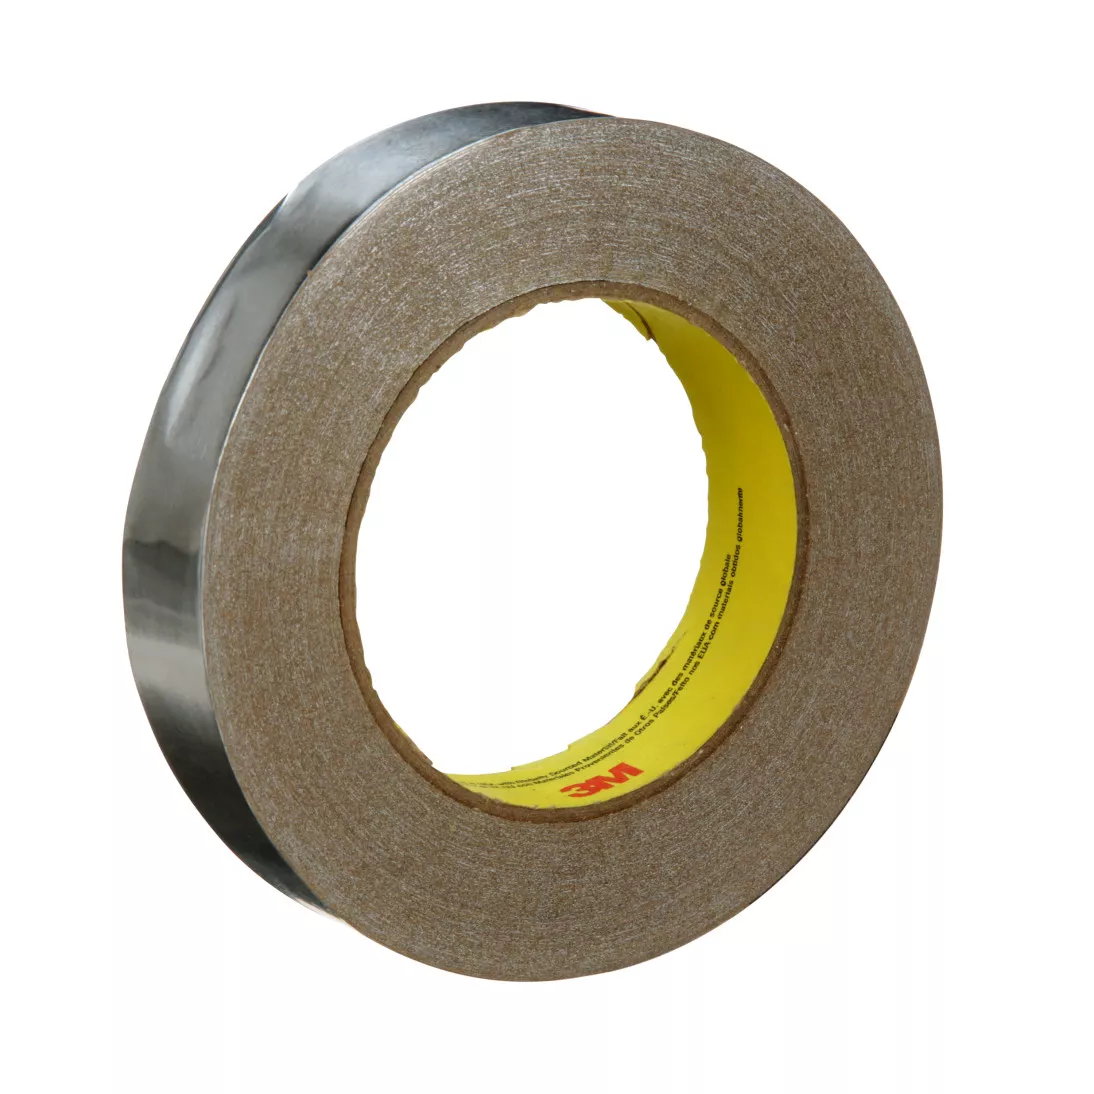 3M™ Venture Tape™ Aluminum Foil Tape 1520CW, Silver, 1 in x 50 yd, 3.2
mil, 48 rolls per case